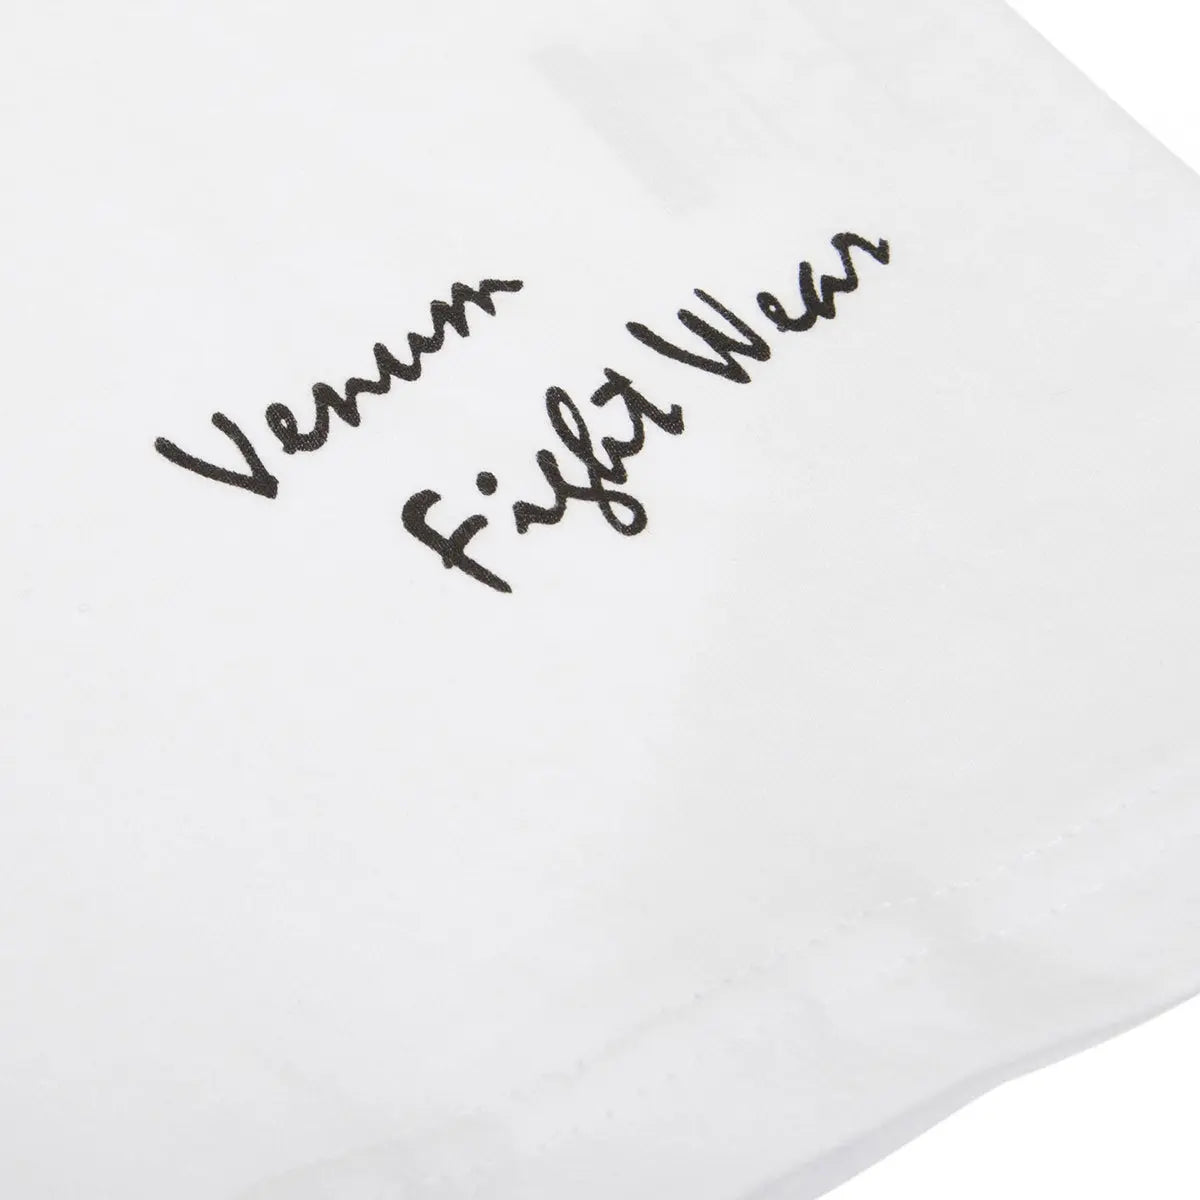 Venum MMA Giant T-Shirt - White Venum